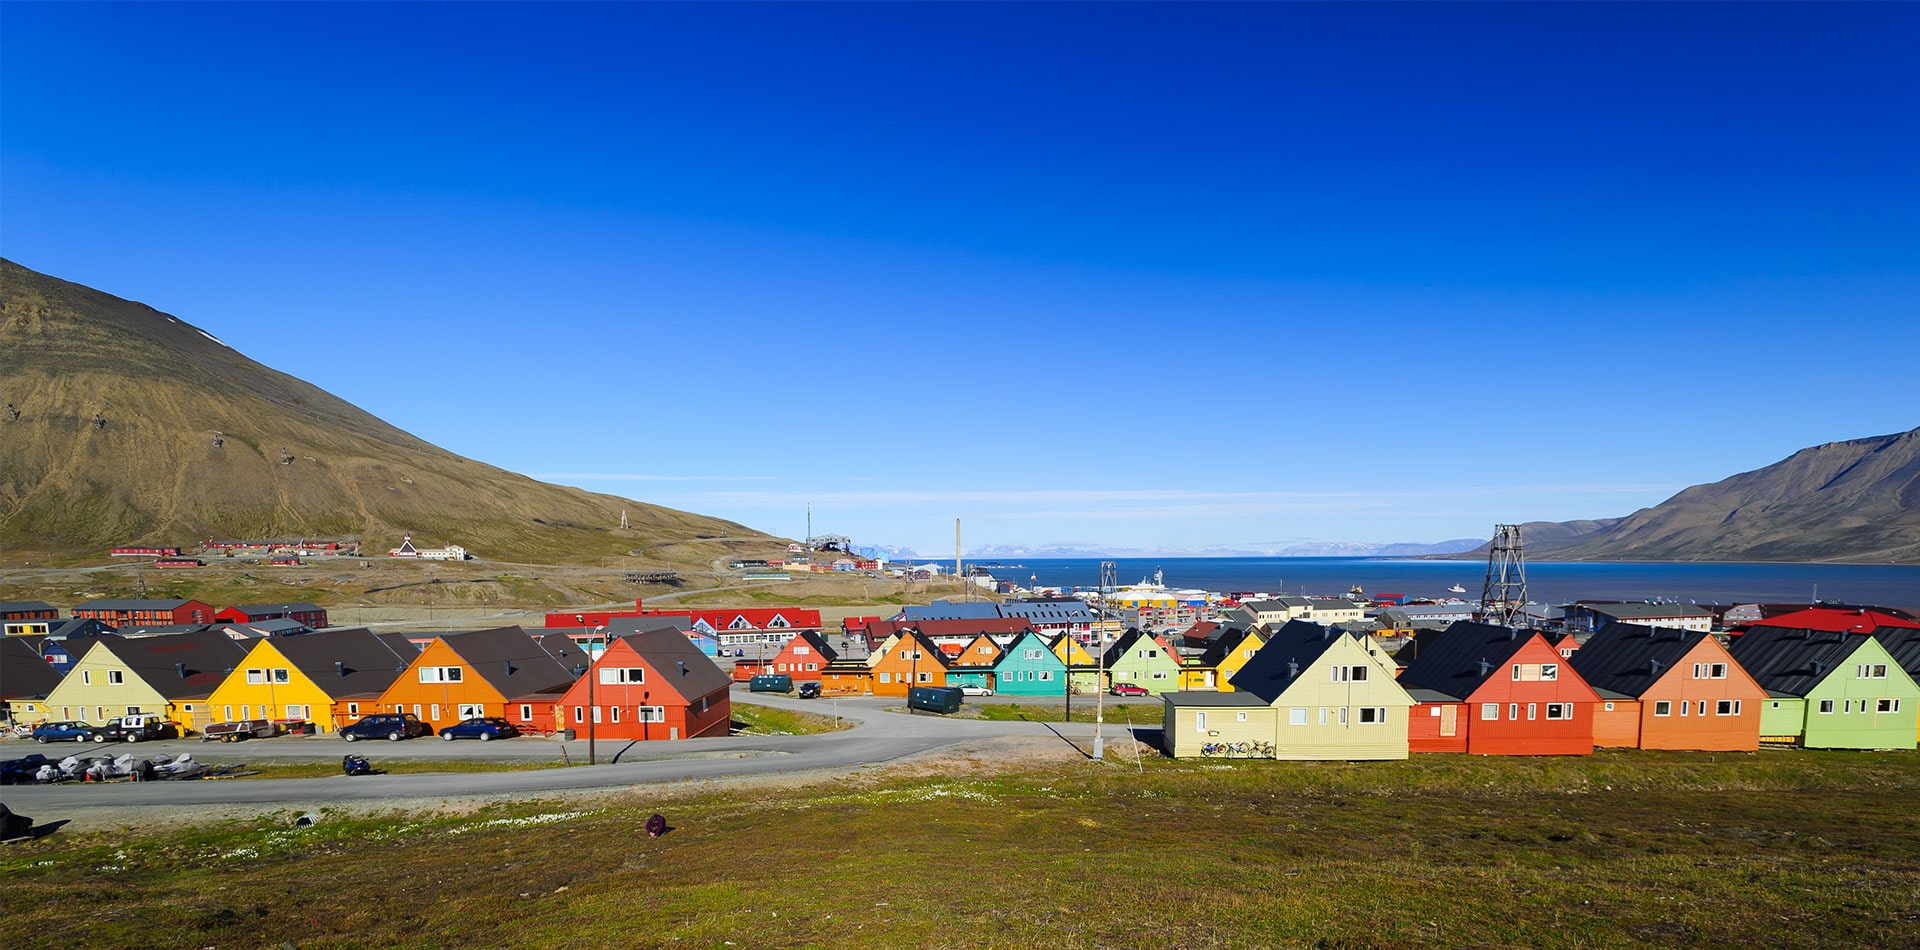 Colourful houses in Longyearbyen, Spitsbergen